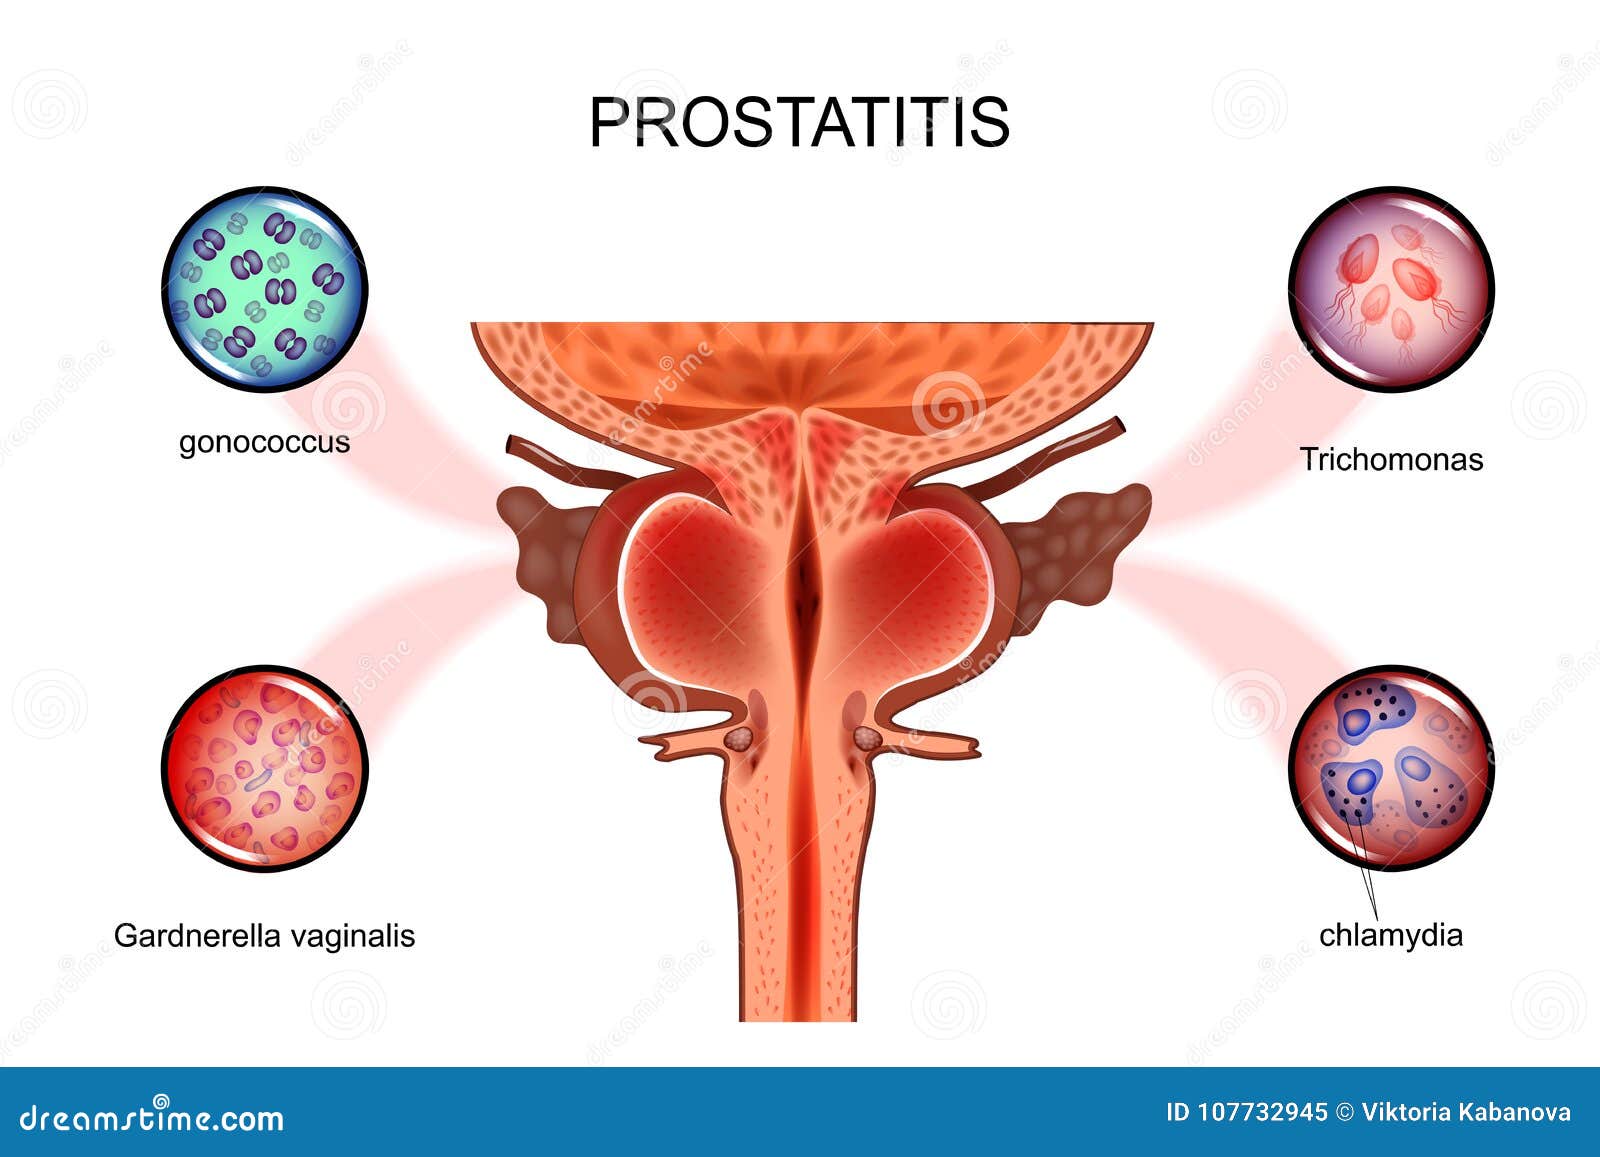 candida prostatitis